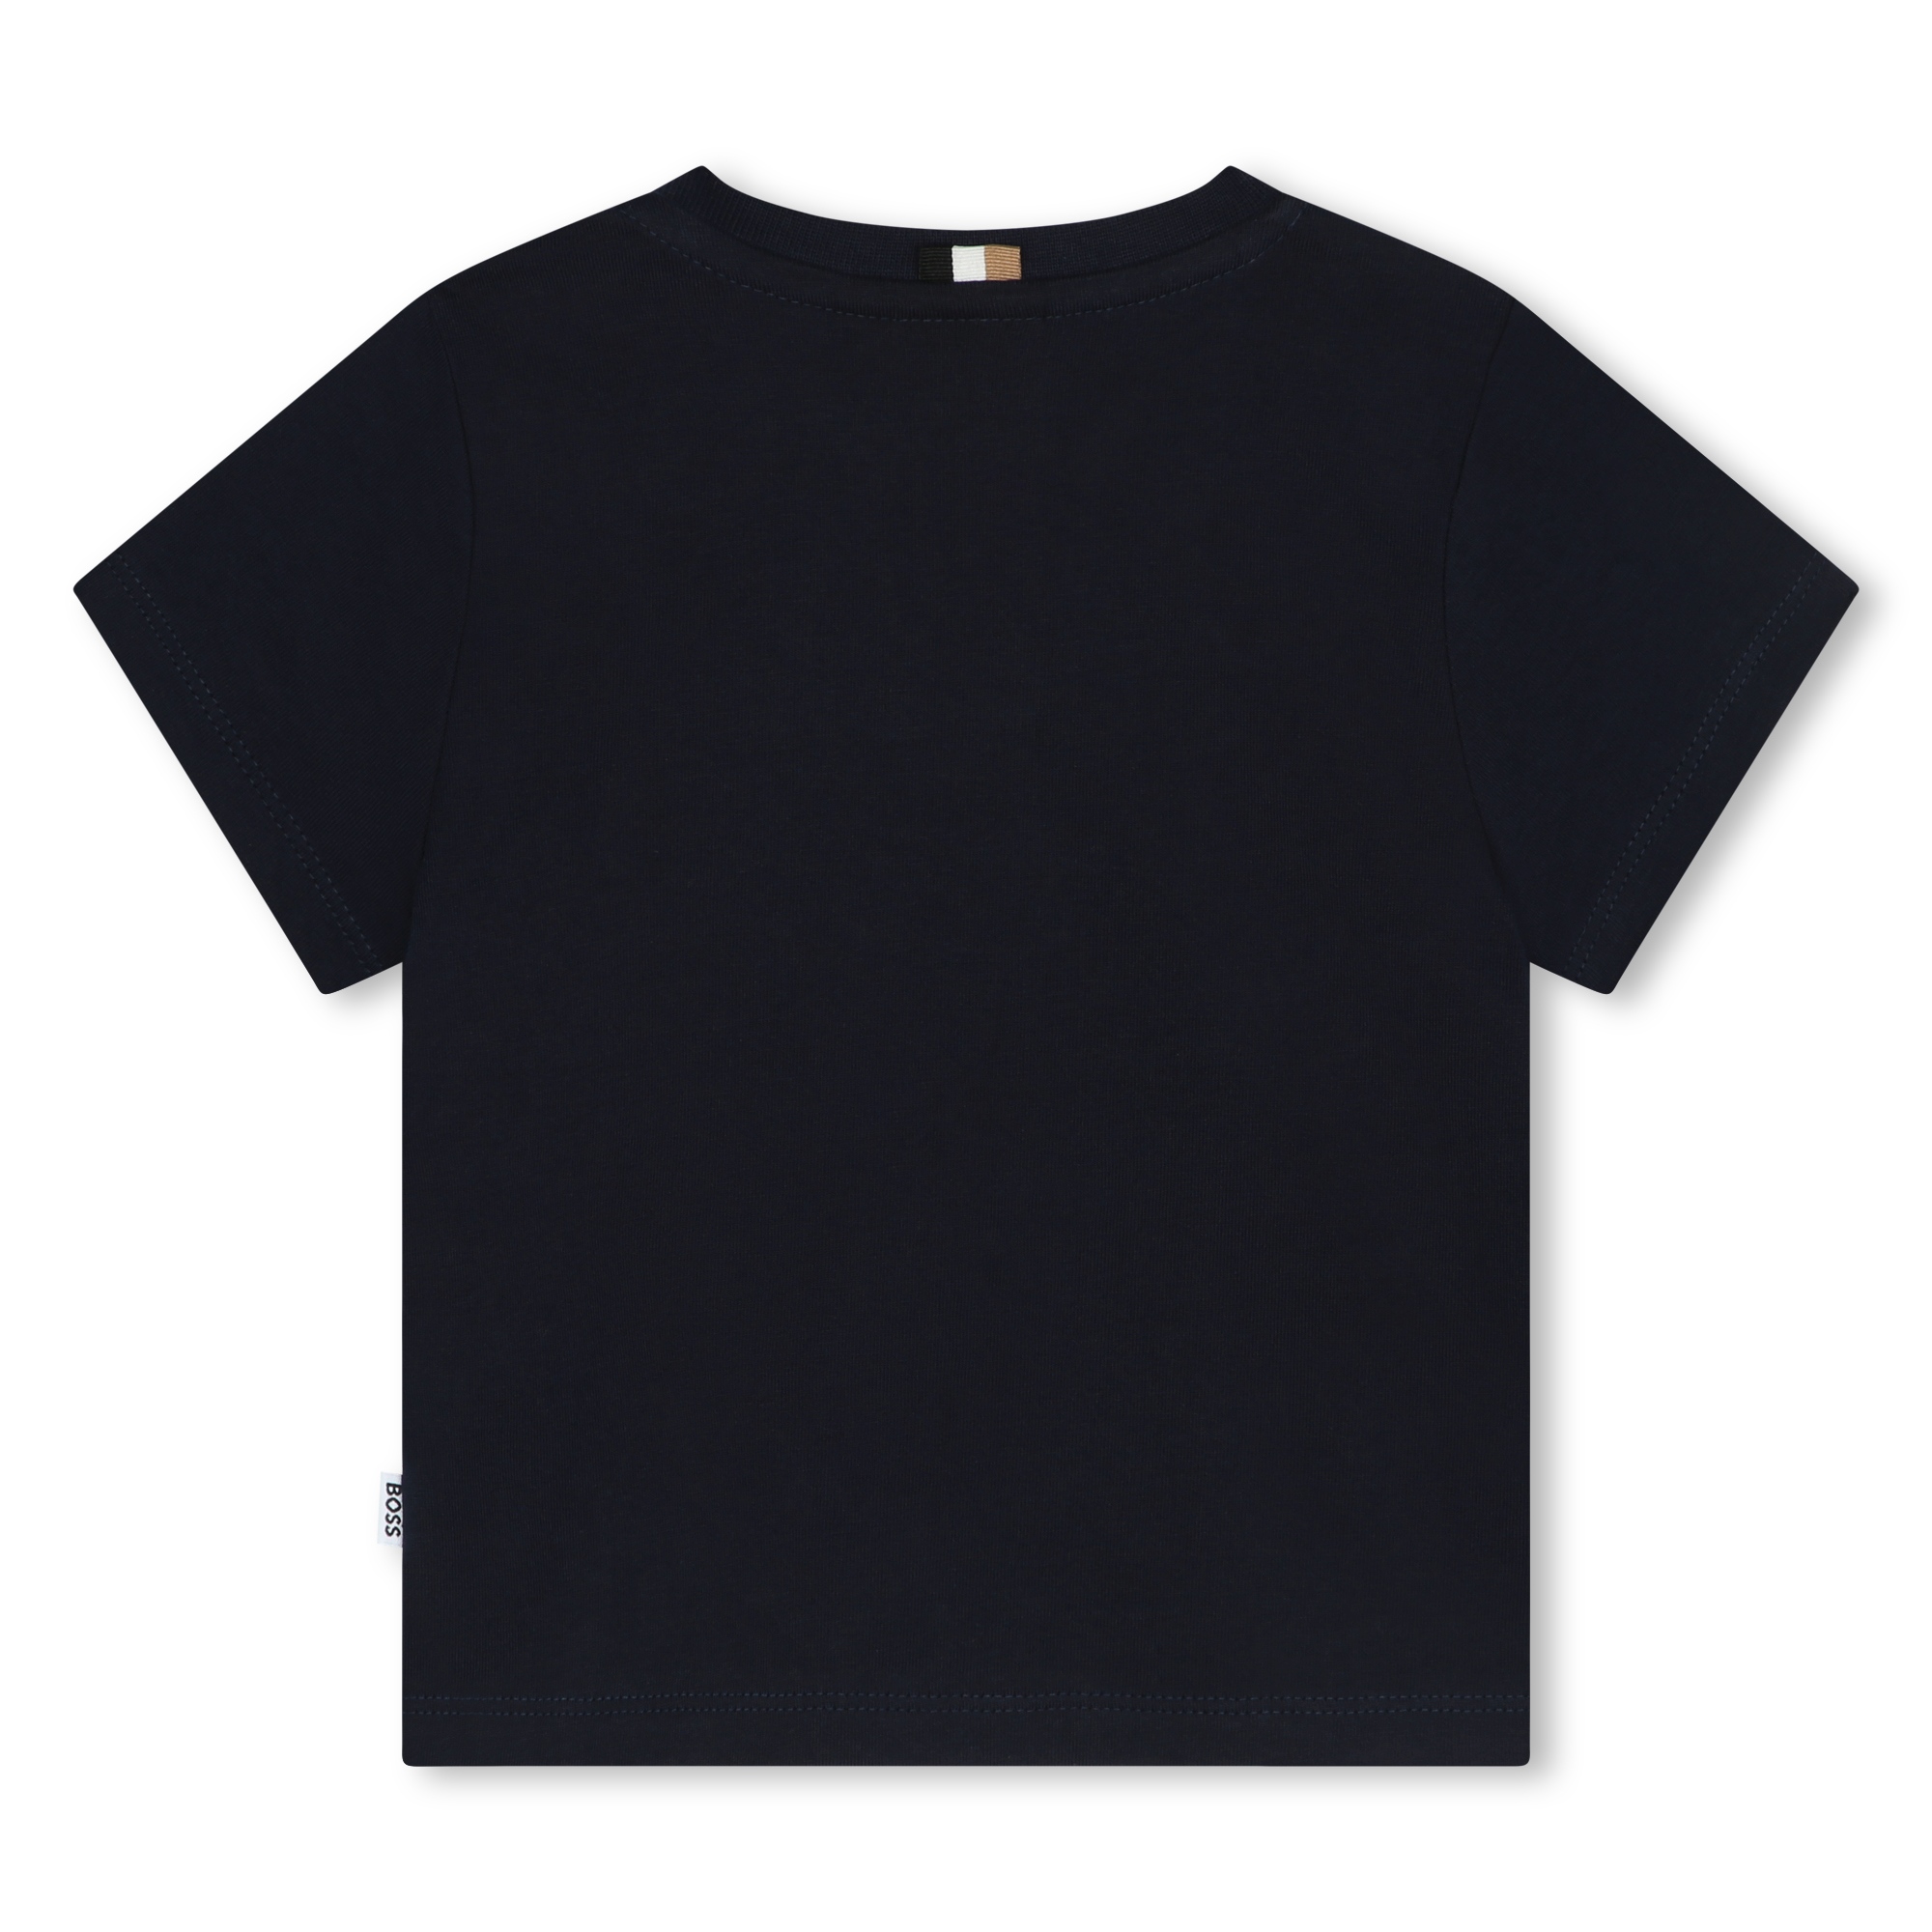 Cotton press-stud T-shirt BOSS for BOY